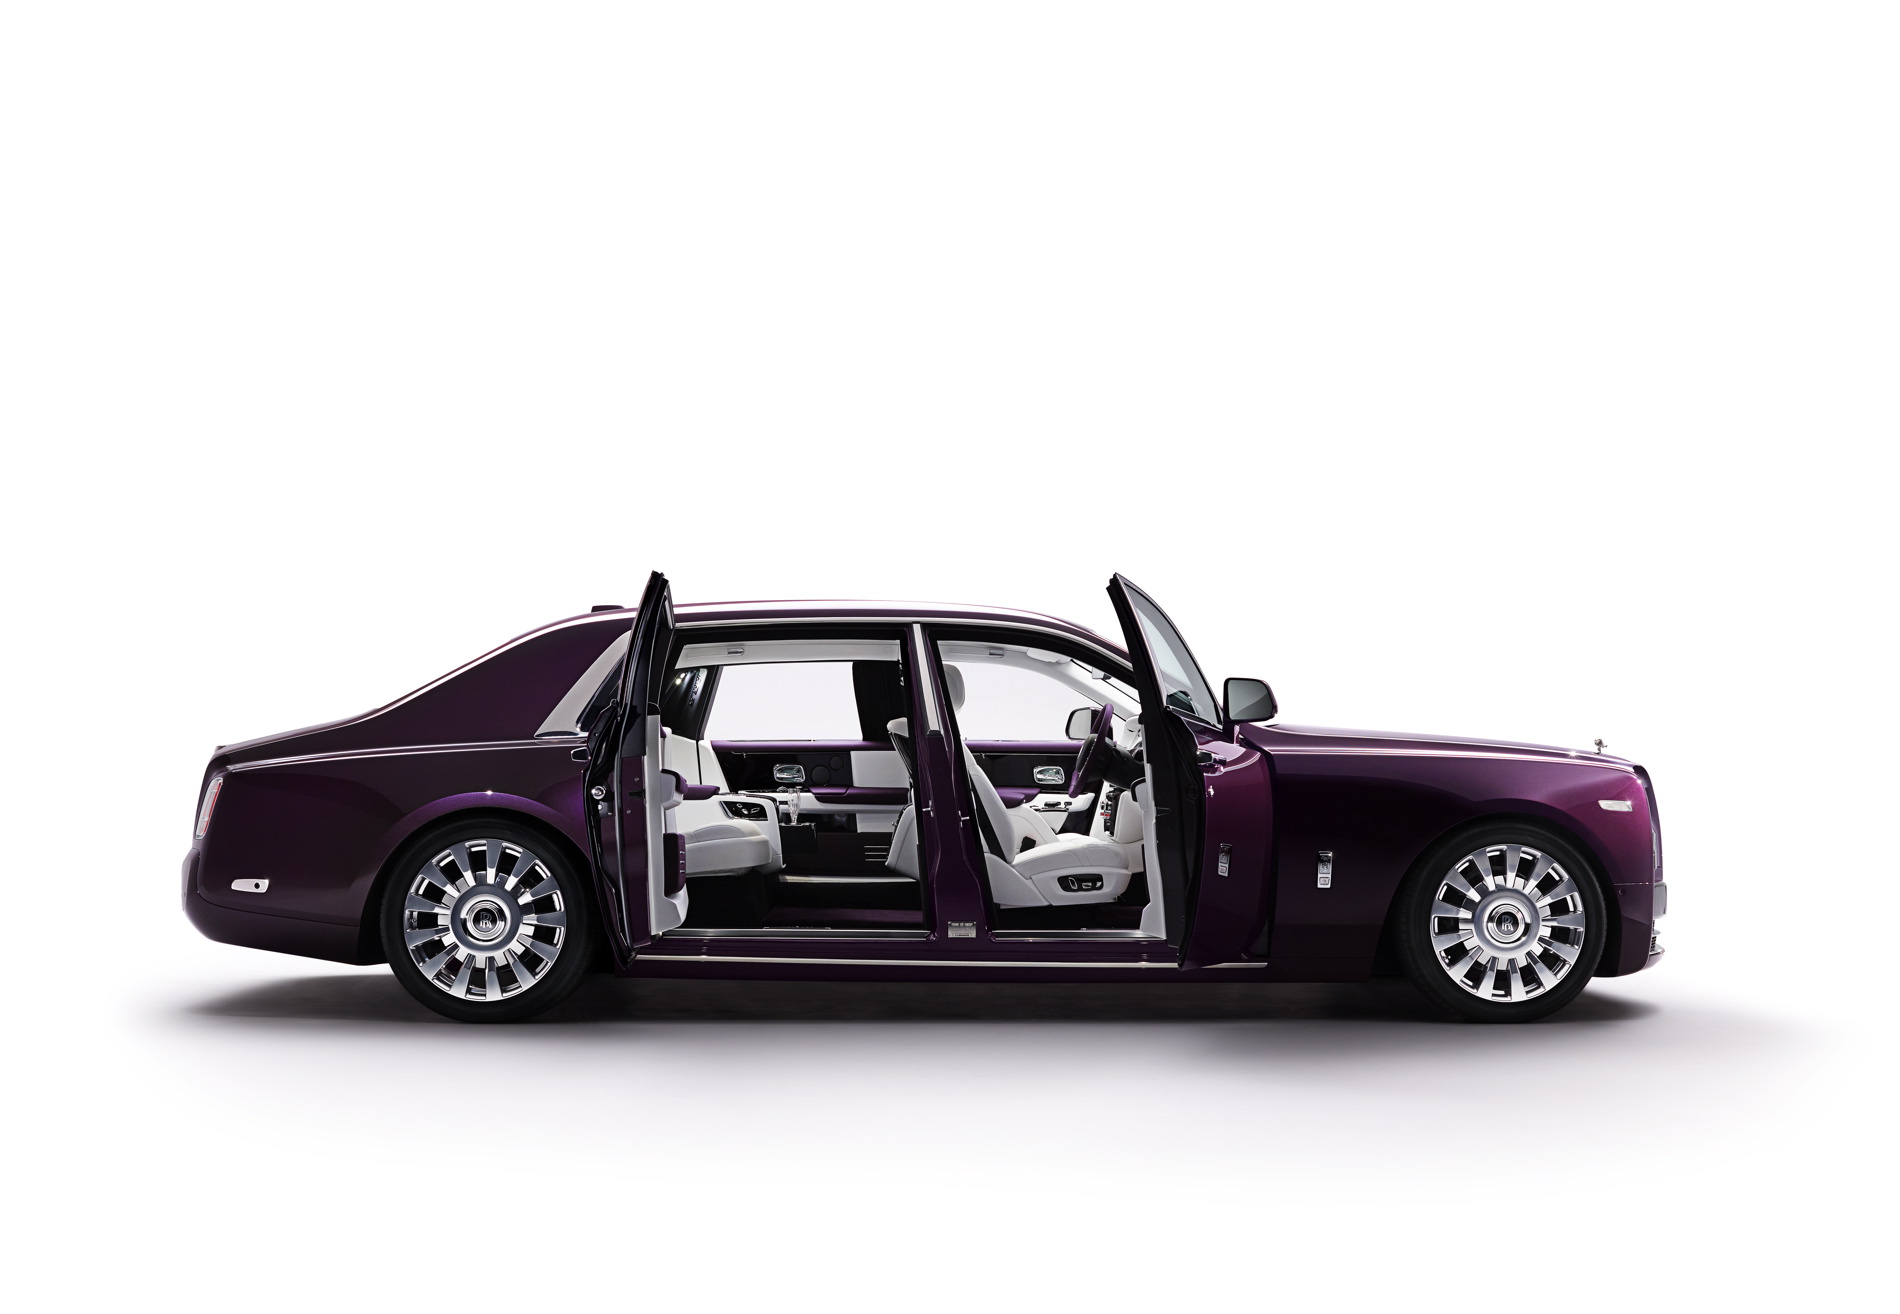 New-Rolls-Royce-Phantom-Extended-Wheelbase-10.jpg